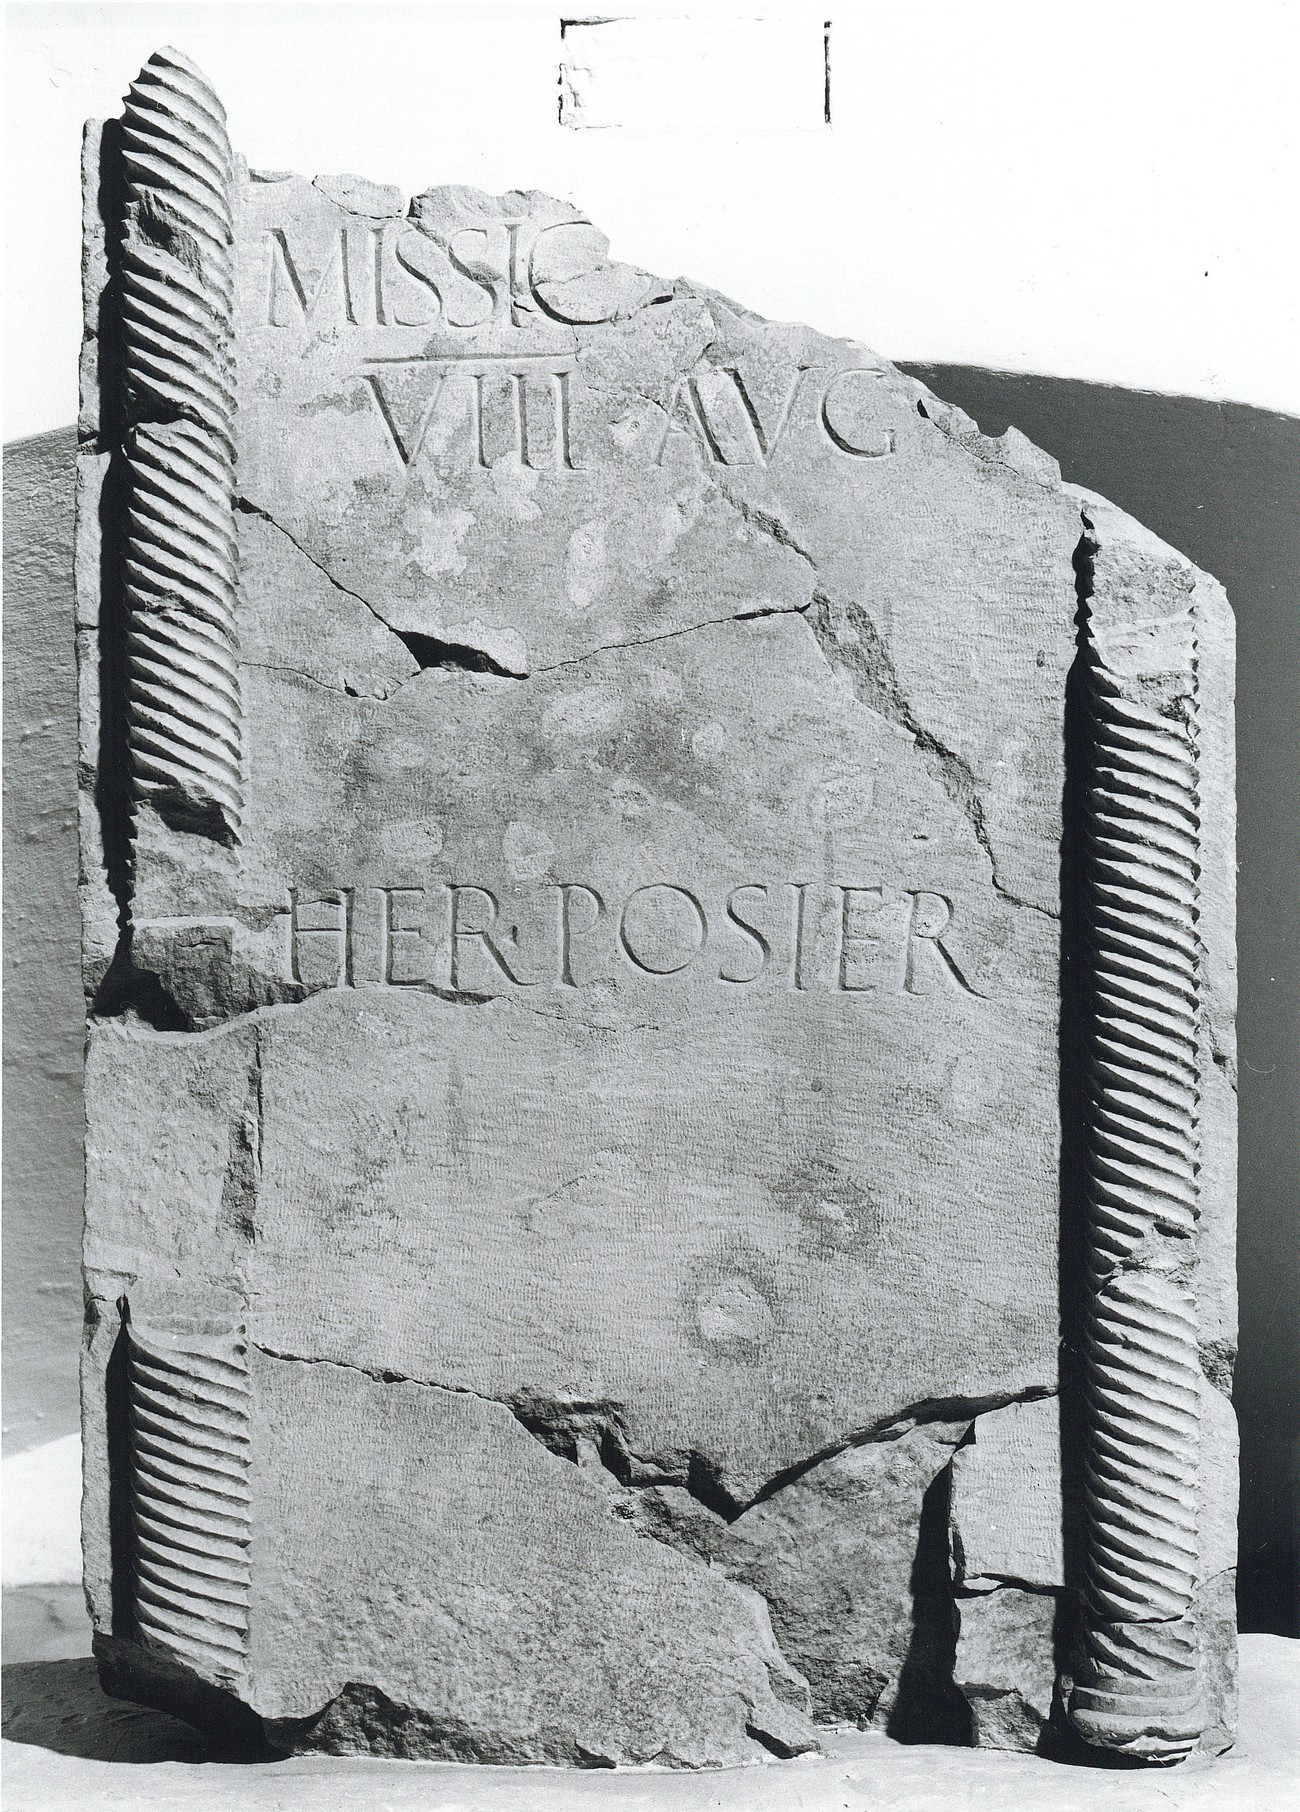 Slika 3: Nagrobna stela za častno odpuščenega vojaka 8. Avgustove legije (PMPO RL 945) -----] / missic(io) [mil(iti) leg(ionis)] / VIII Aug(ustae) / here(des) posier(unt). ... častno odpuščenemu vojaku 8. Avgustove legije so postavili dediči.